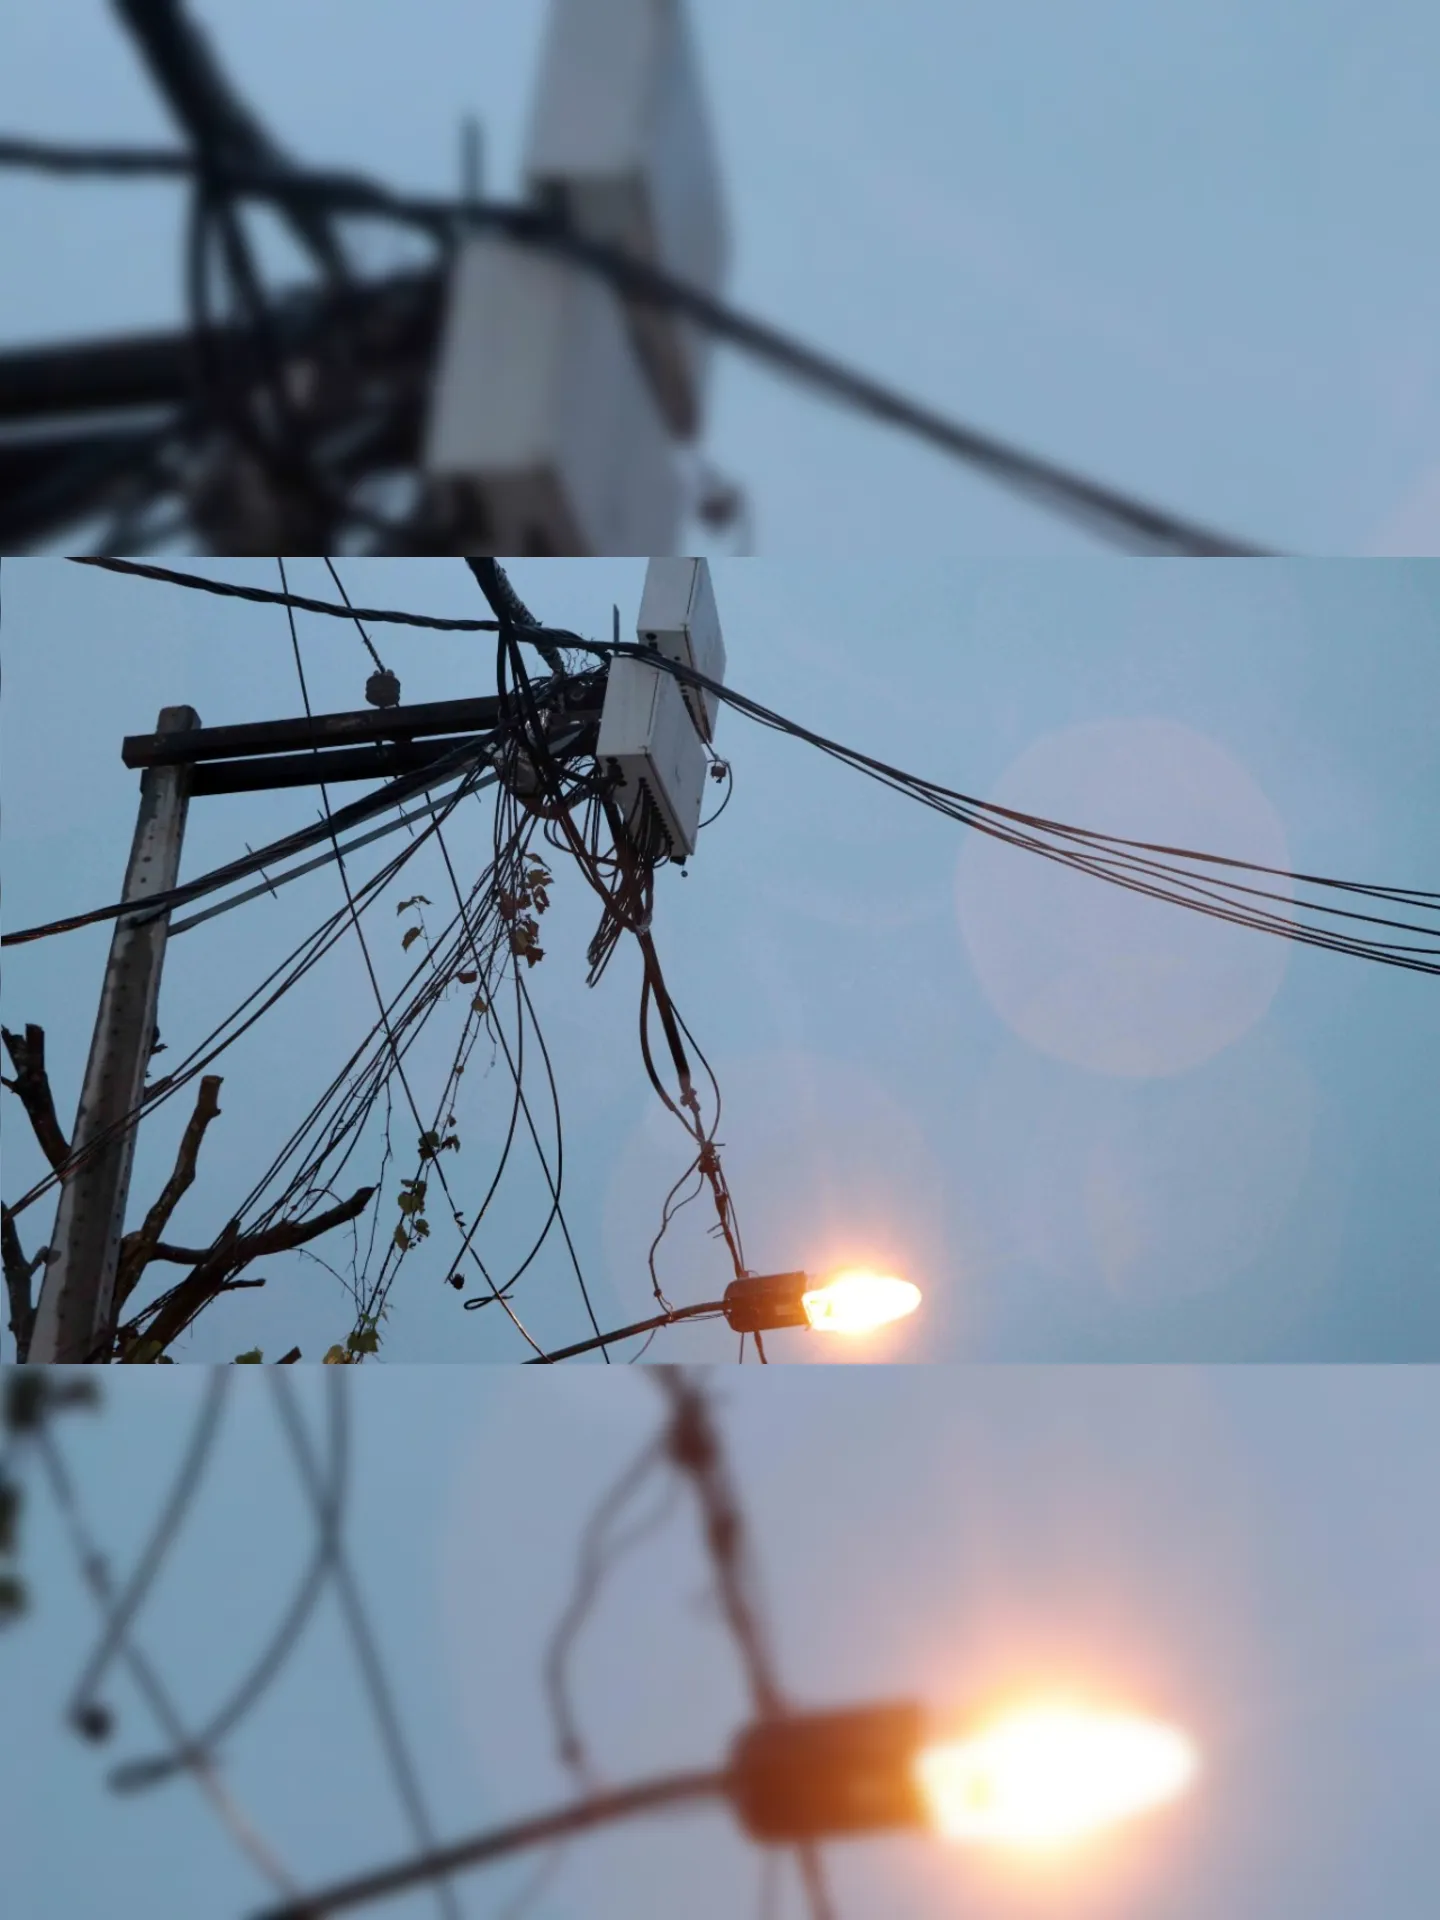 As linhas que ficam enroscadas na rede elétrica provocam desgaste na fiação, podendo ocasionar curtos-circuitos e risco de choque elétrico